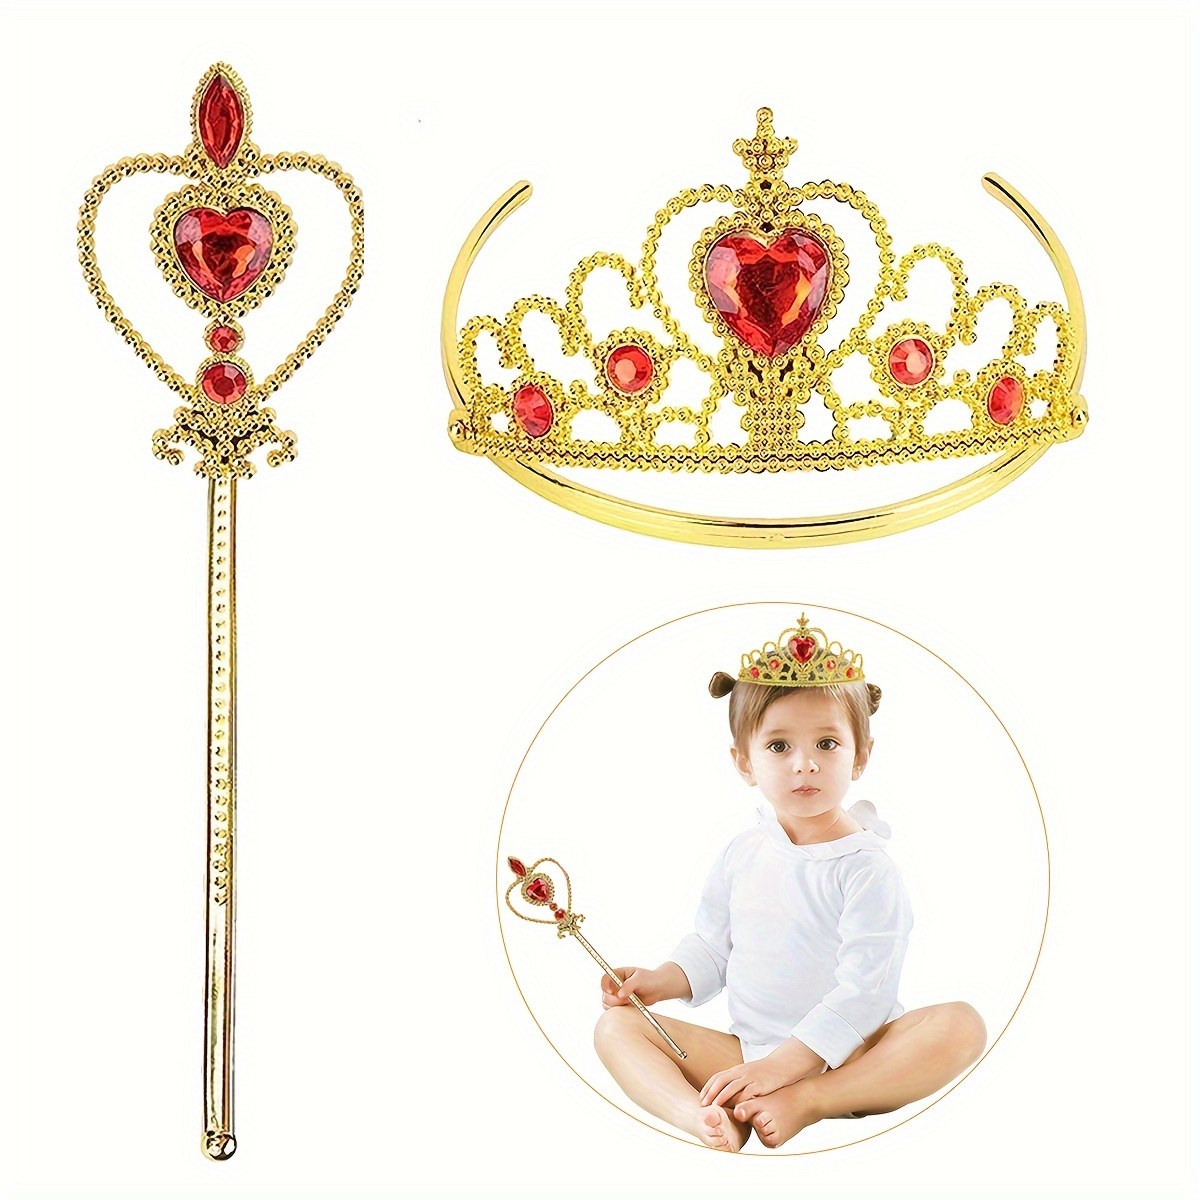 Corona Della Principessa Per Ragazze - Resi Gratuiti Entro 90